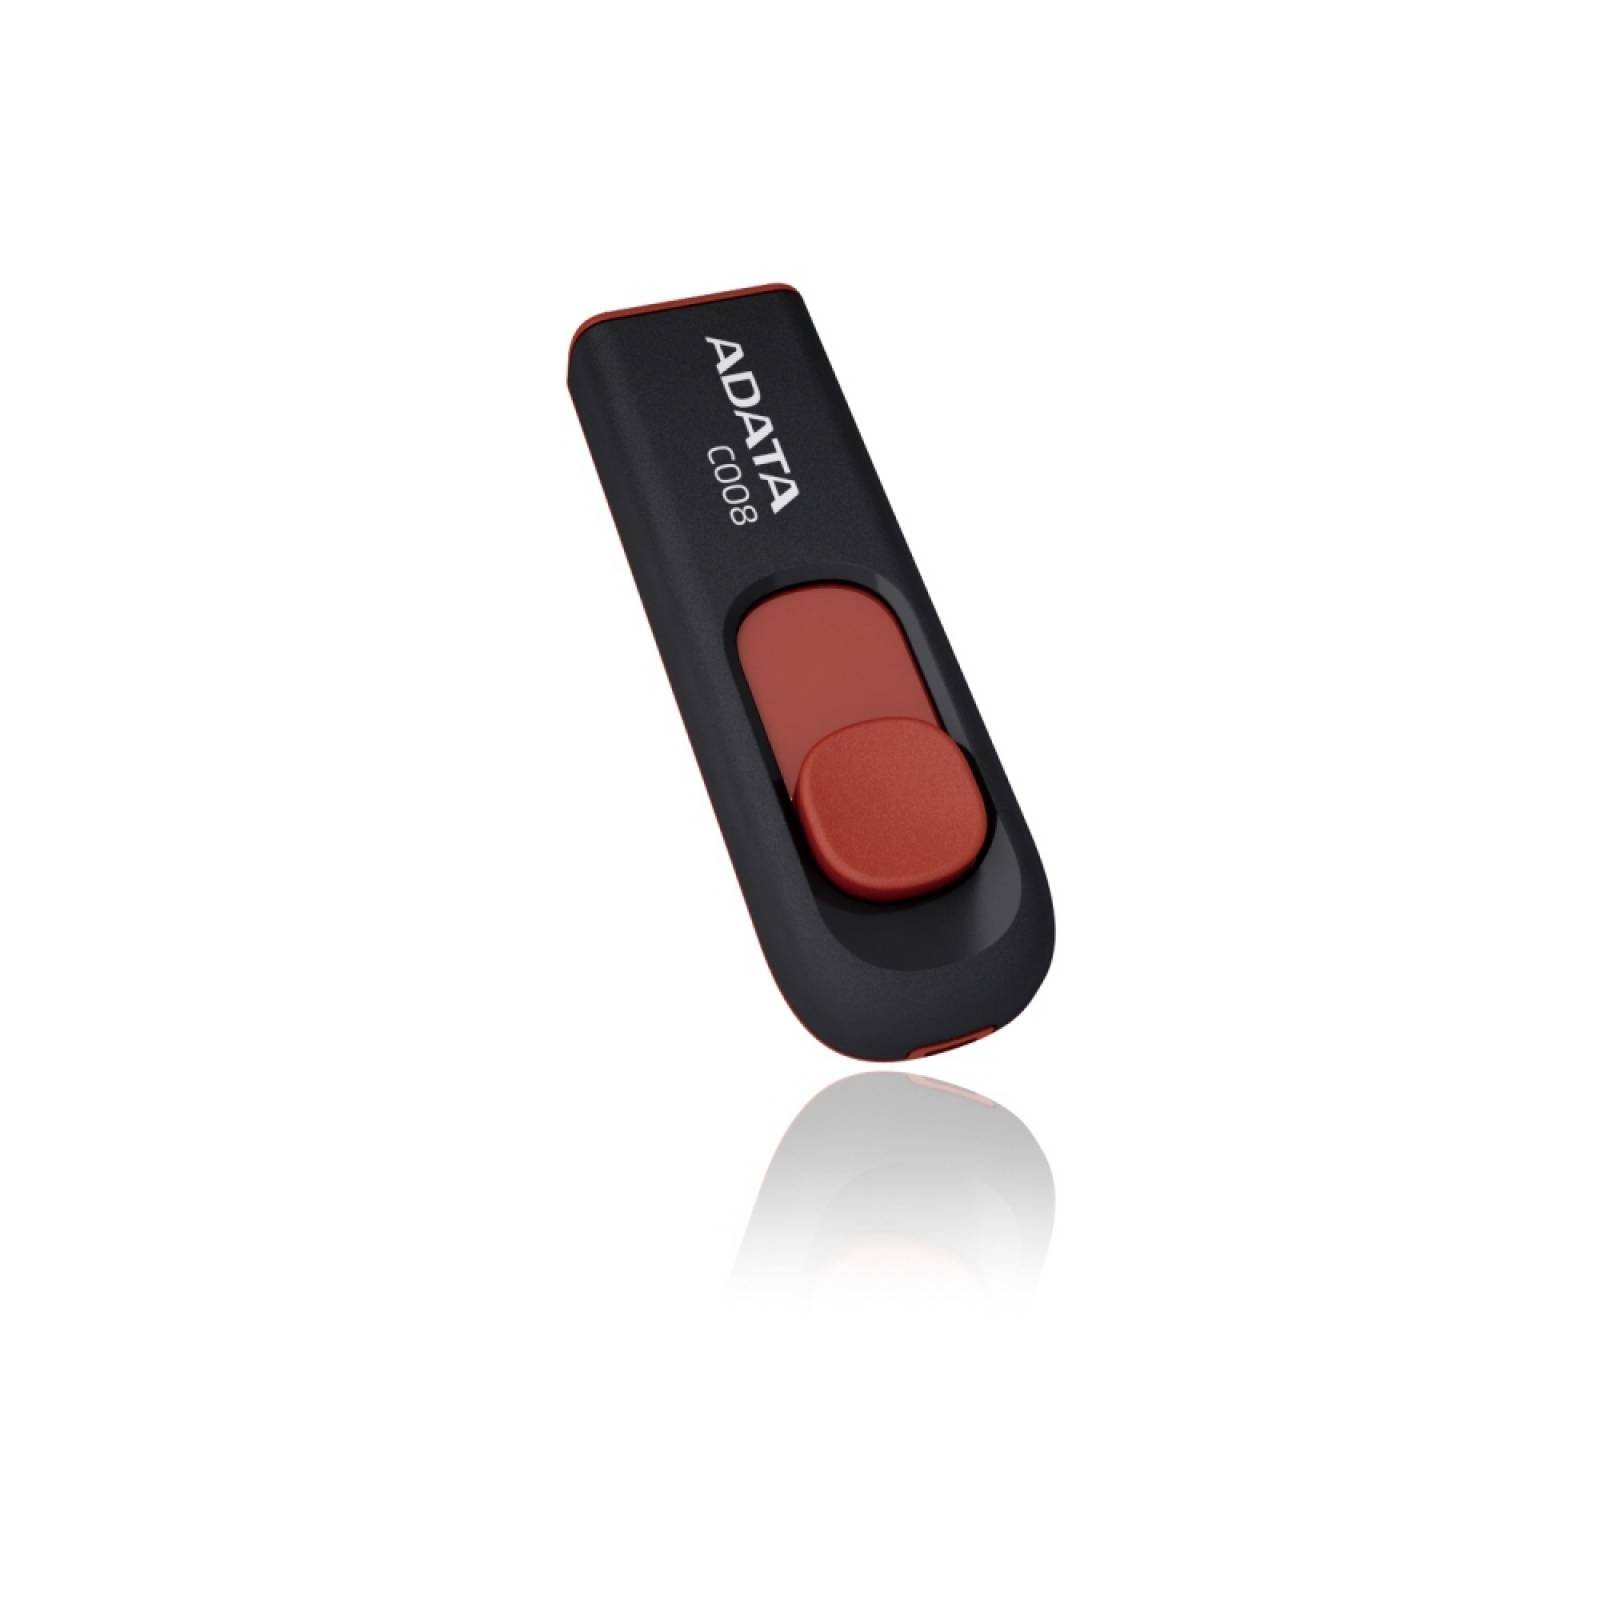 Memoria USB 2.0 Adata C008 32GB Color Negro Rojo